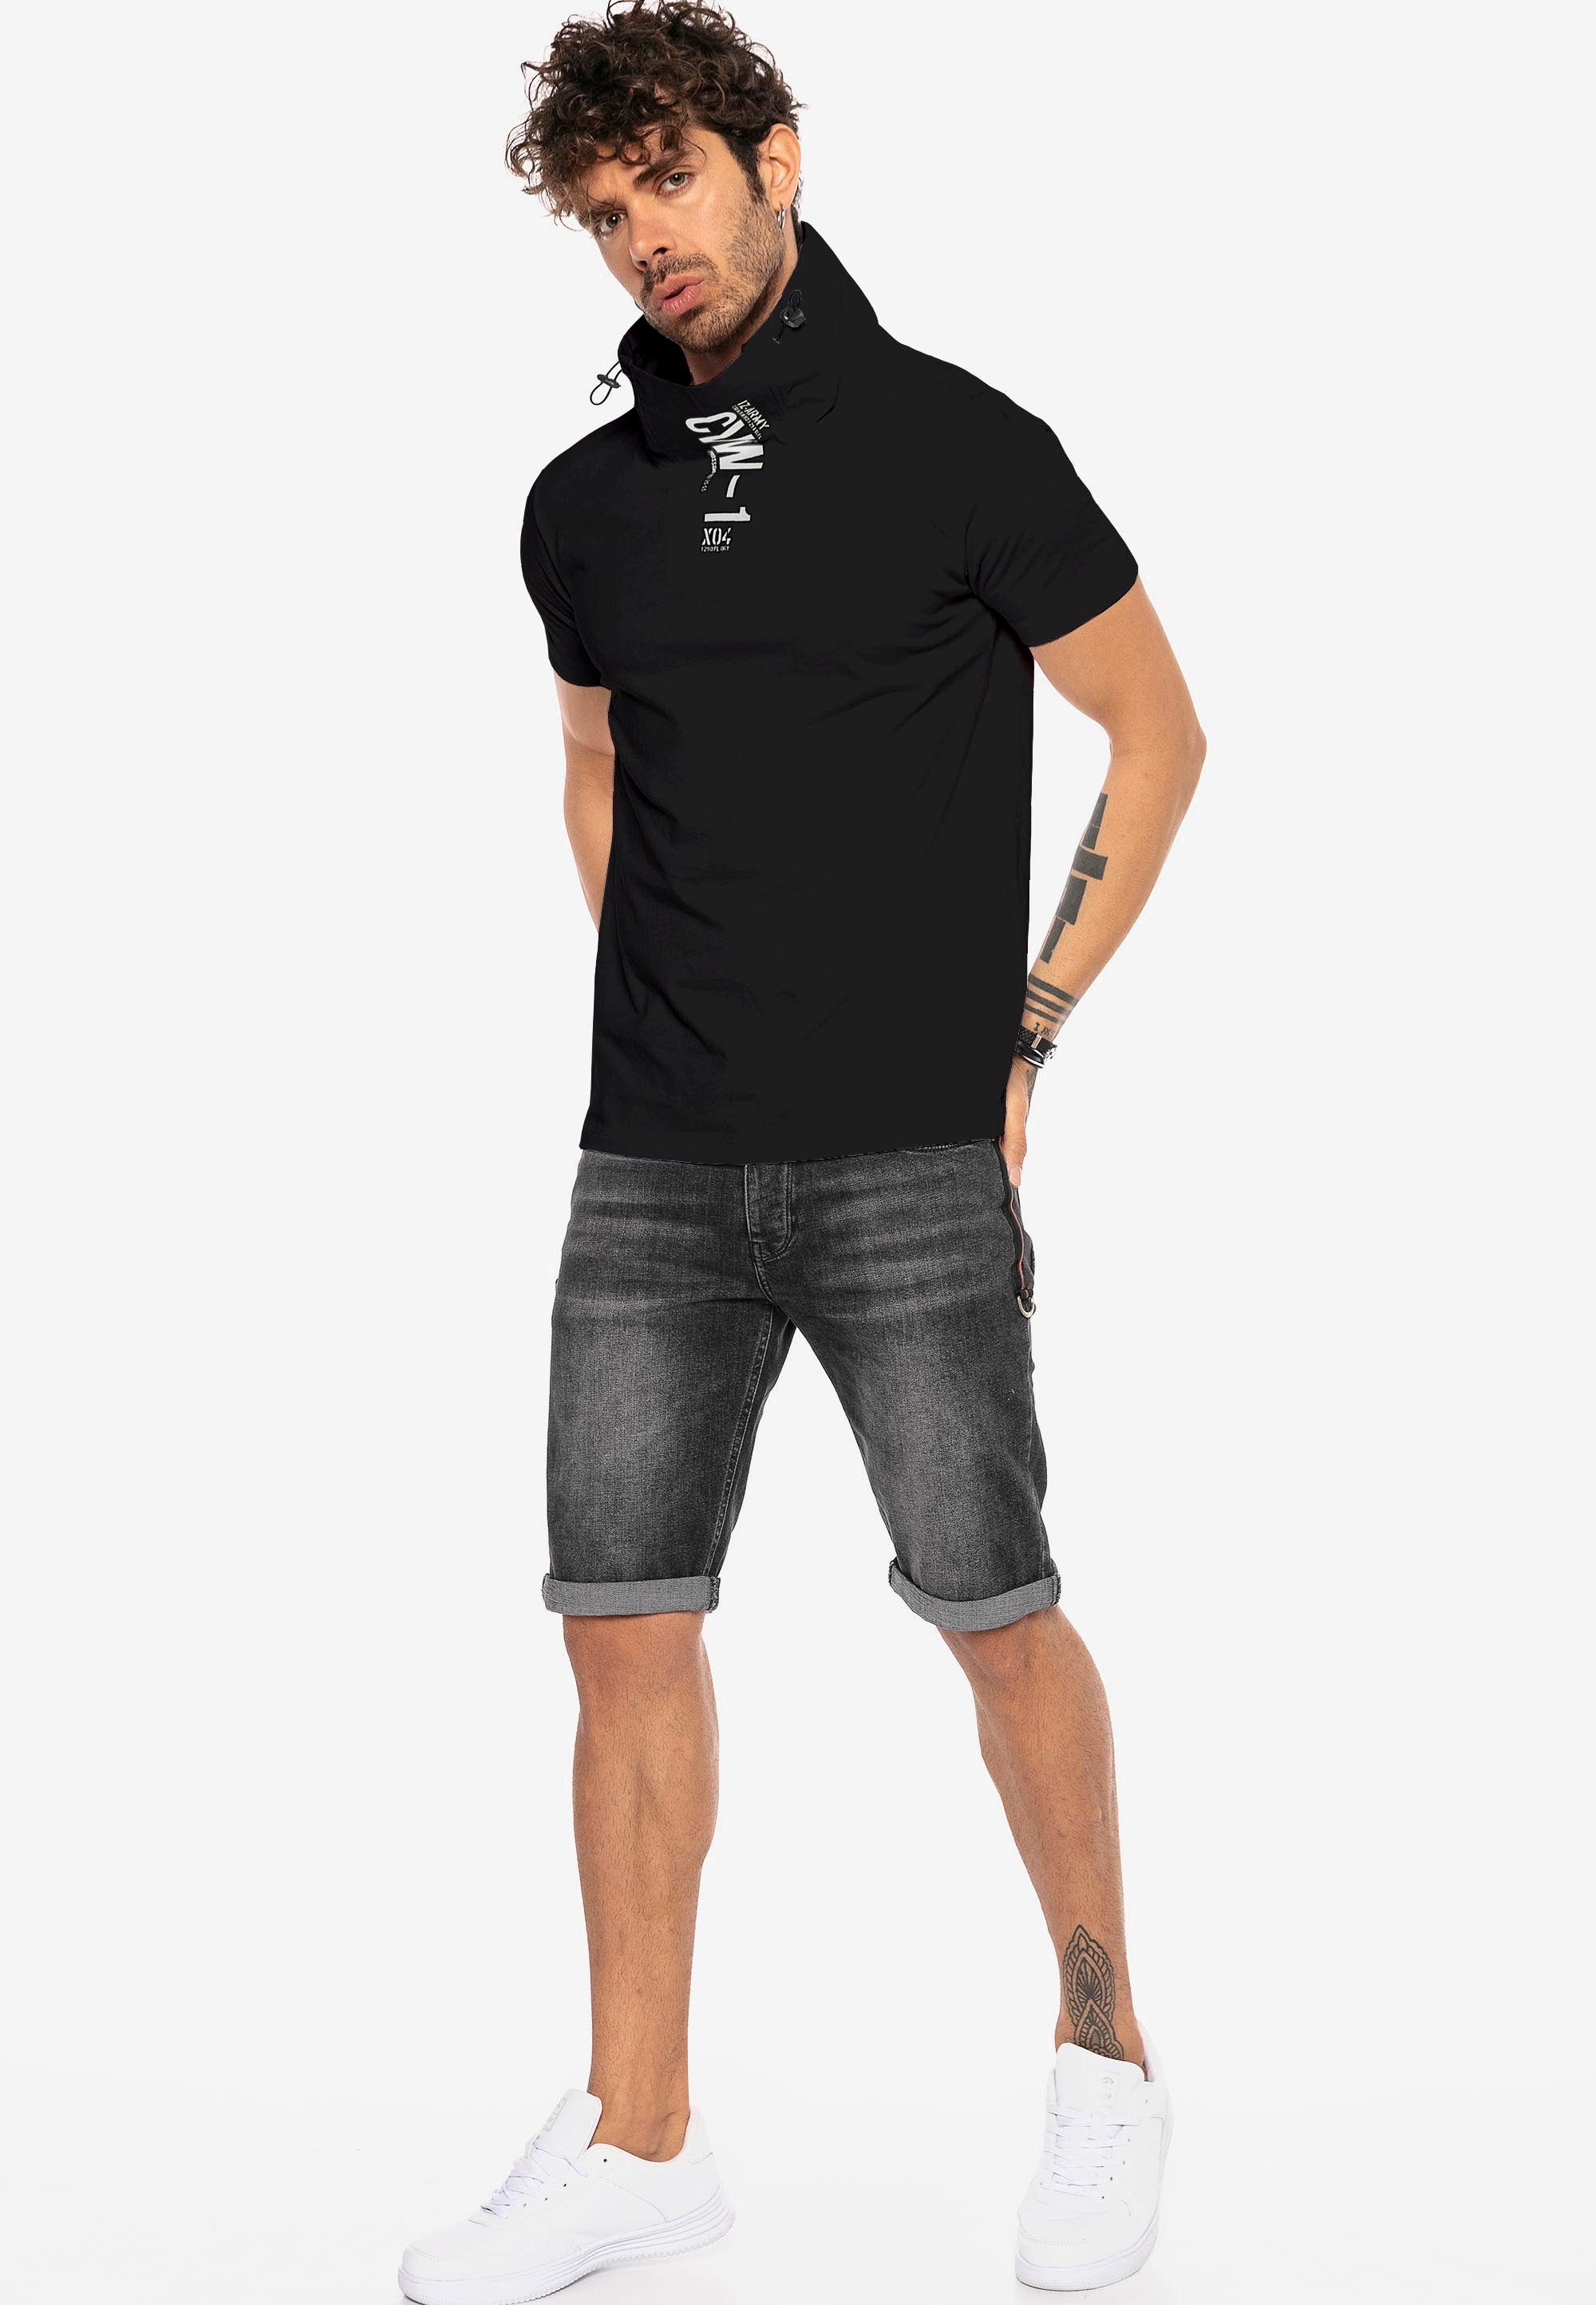 Kragen Sunnyvale mit T-Shirt schwarz RedBridge hohem